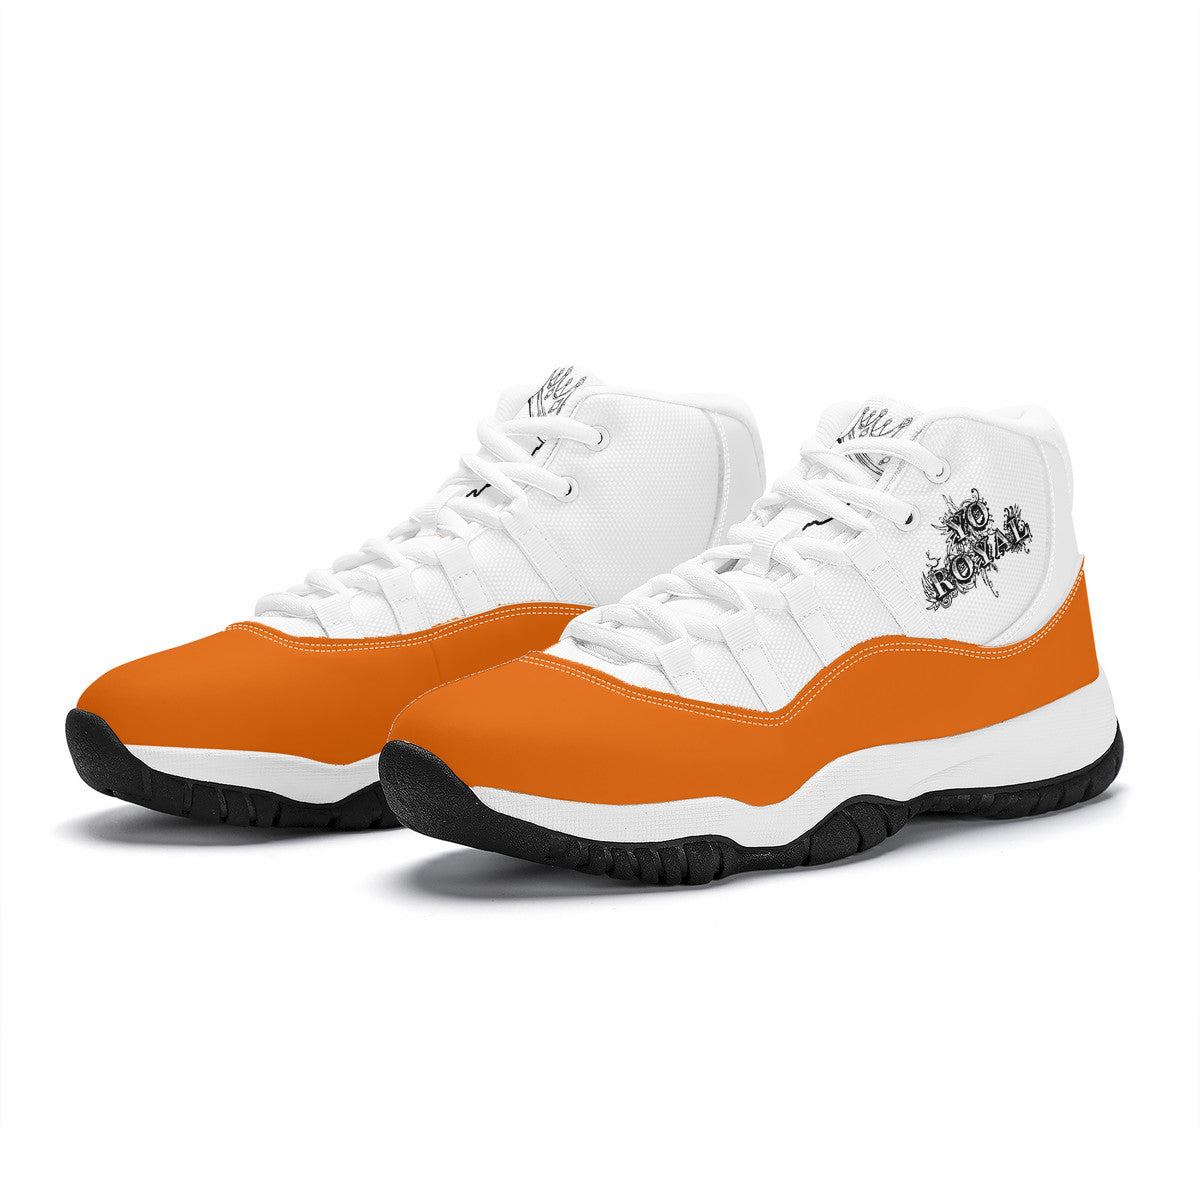 Orange High Top Air Retro Sneakers